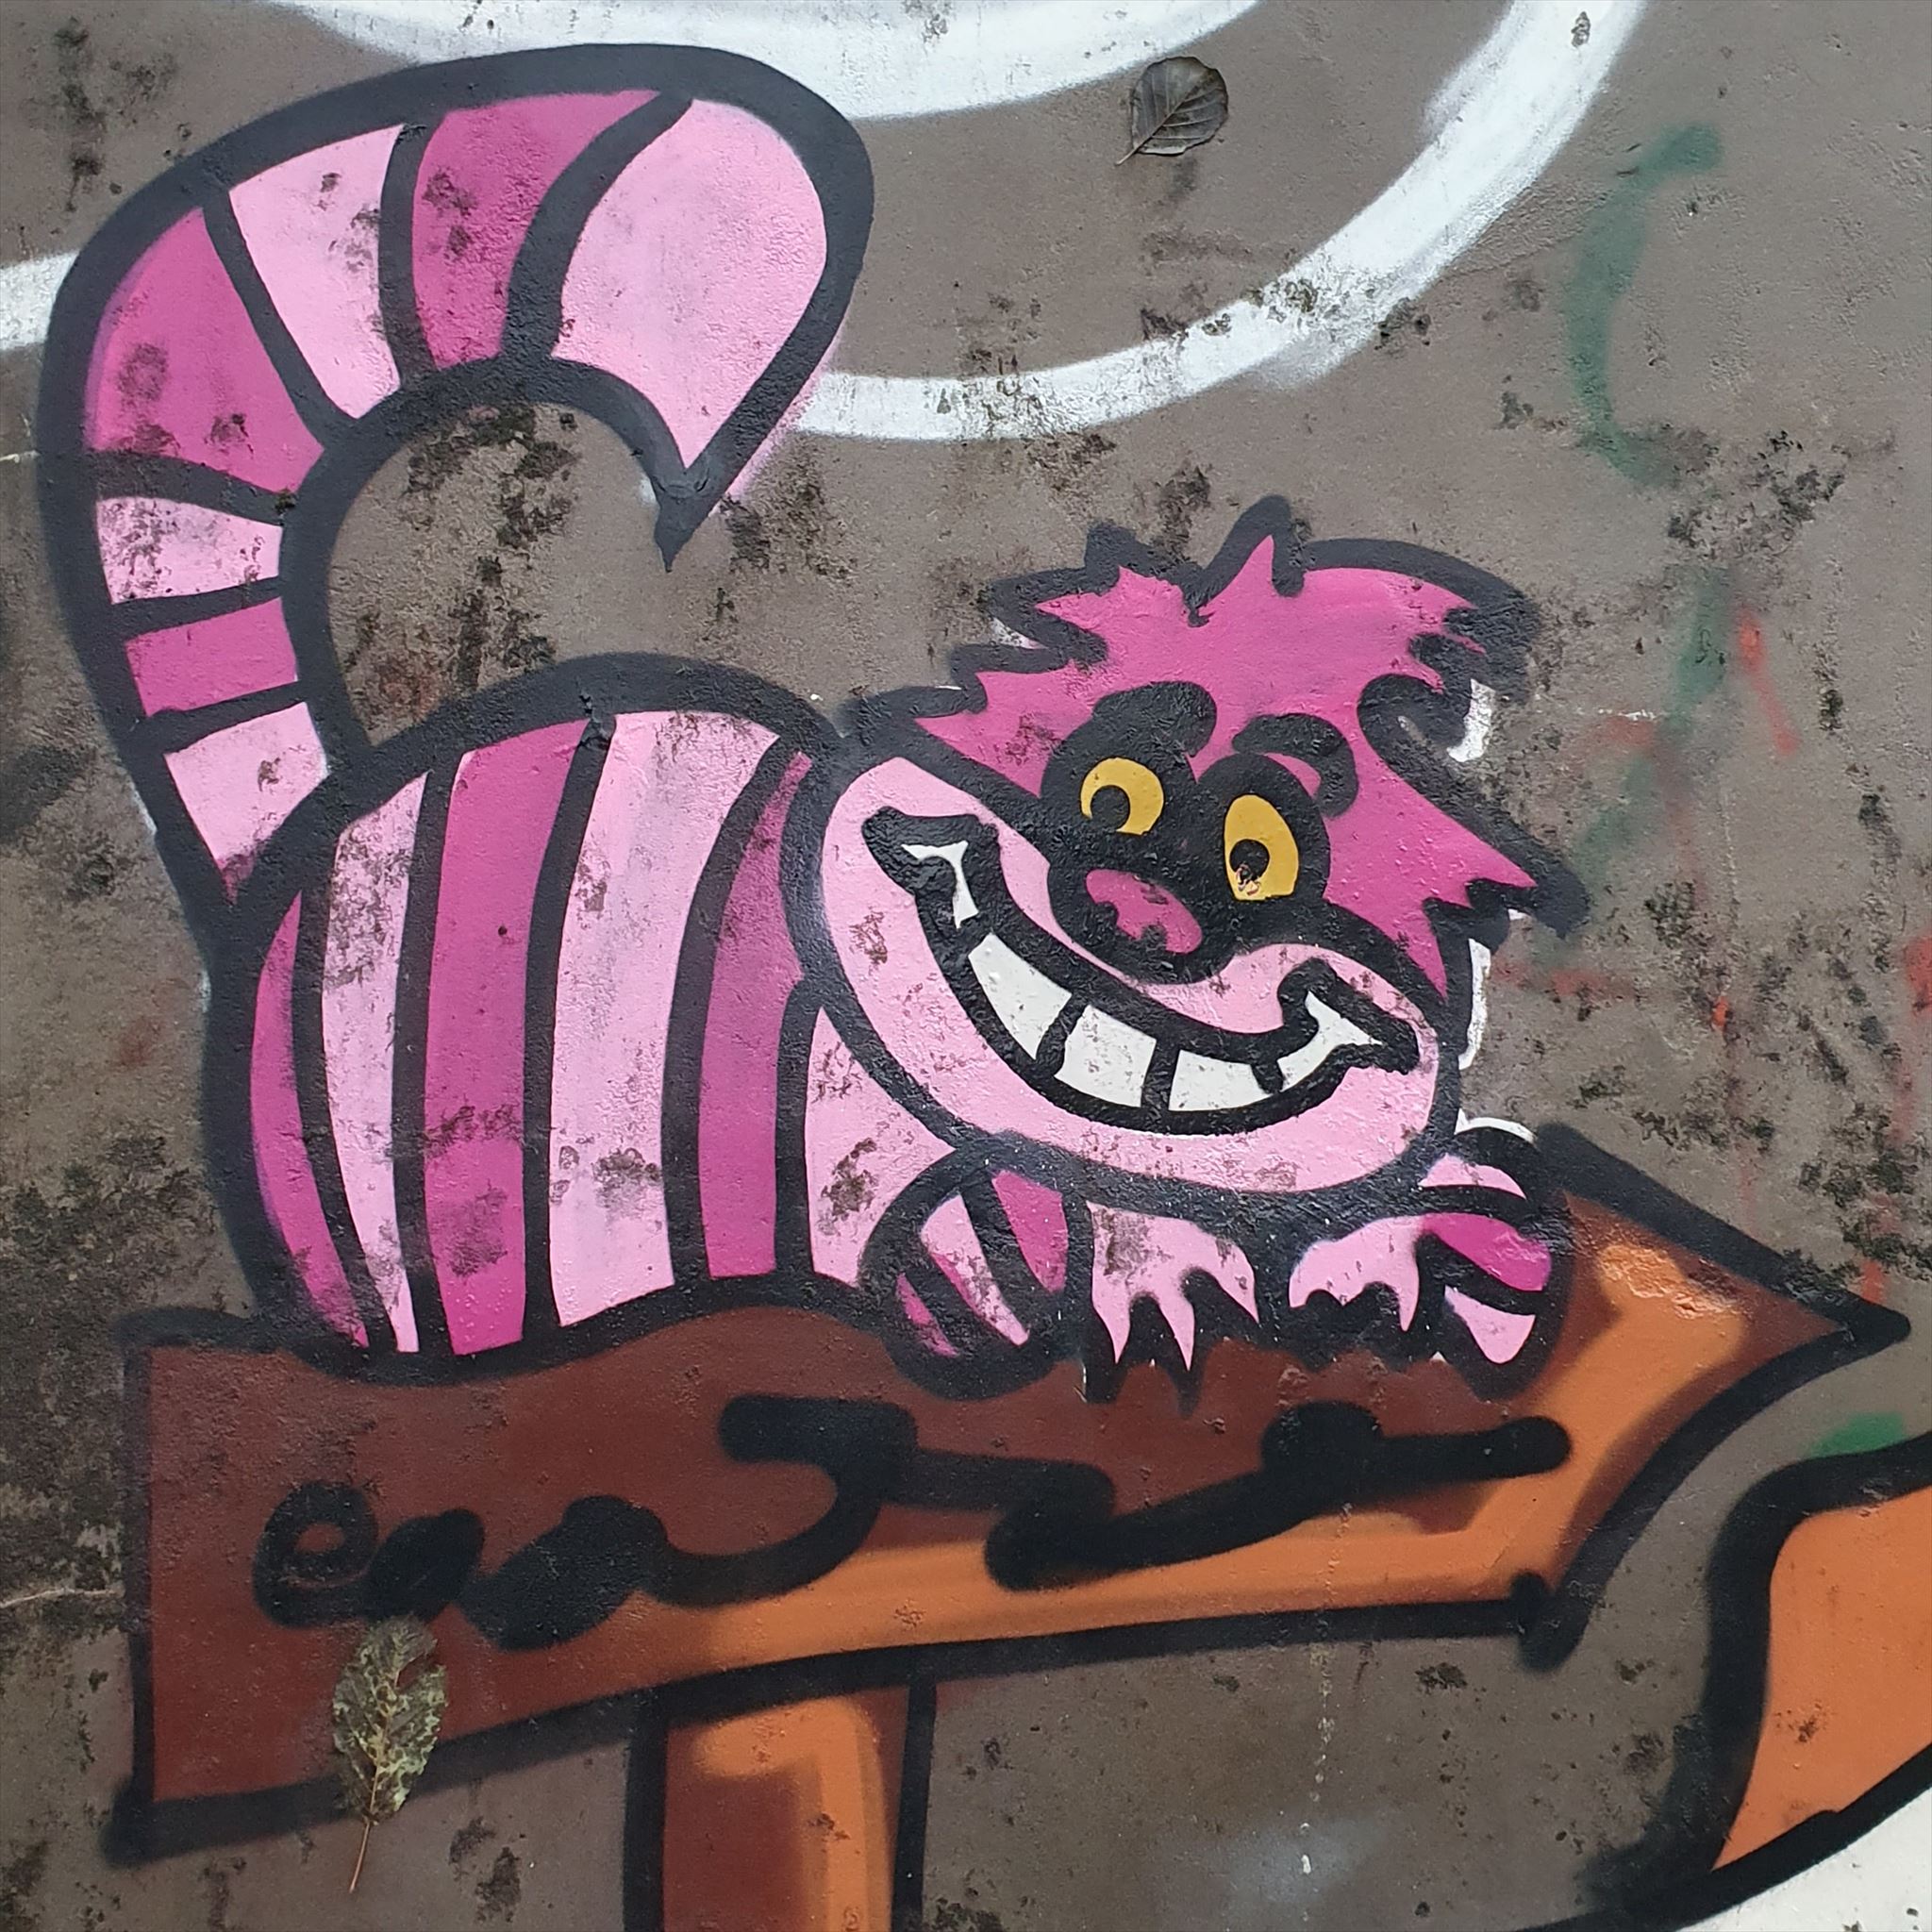 Cheshirekatten